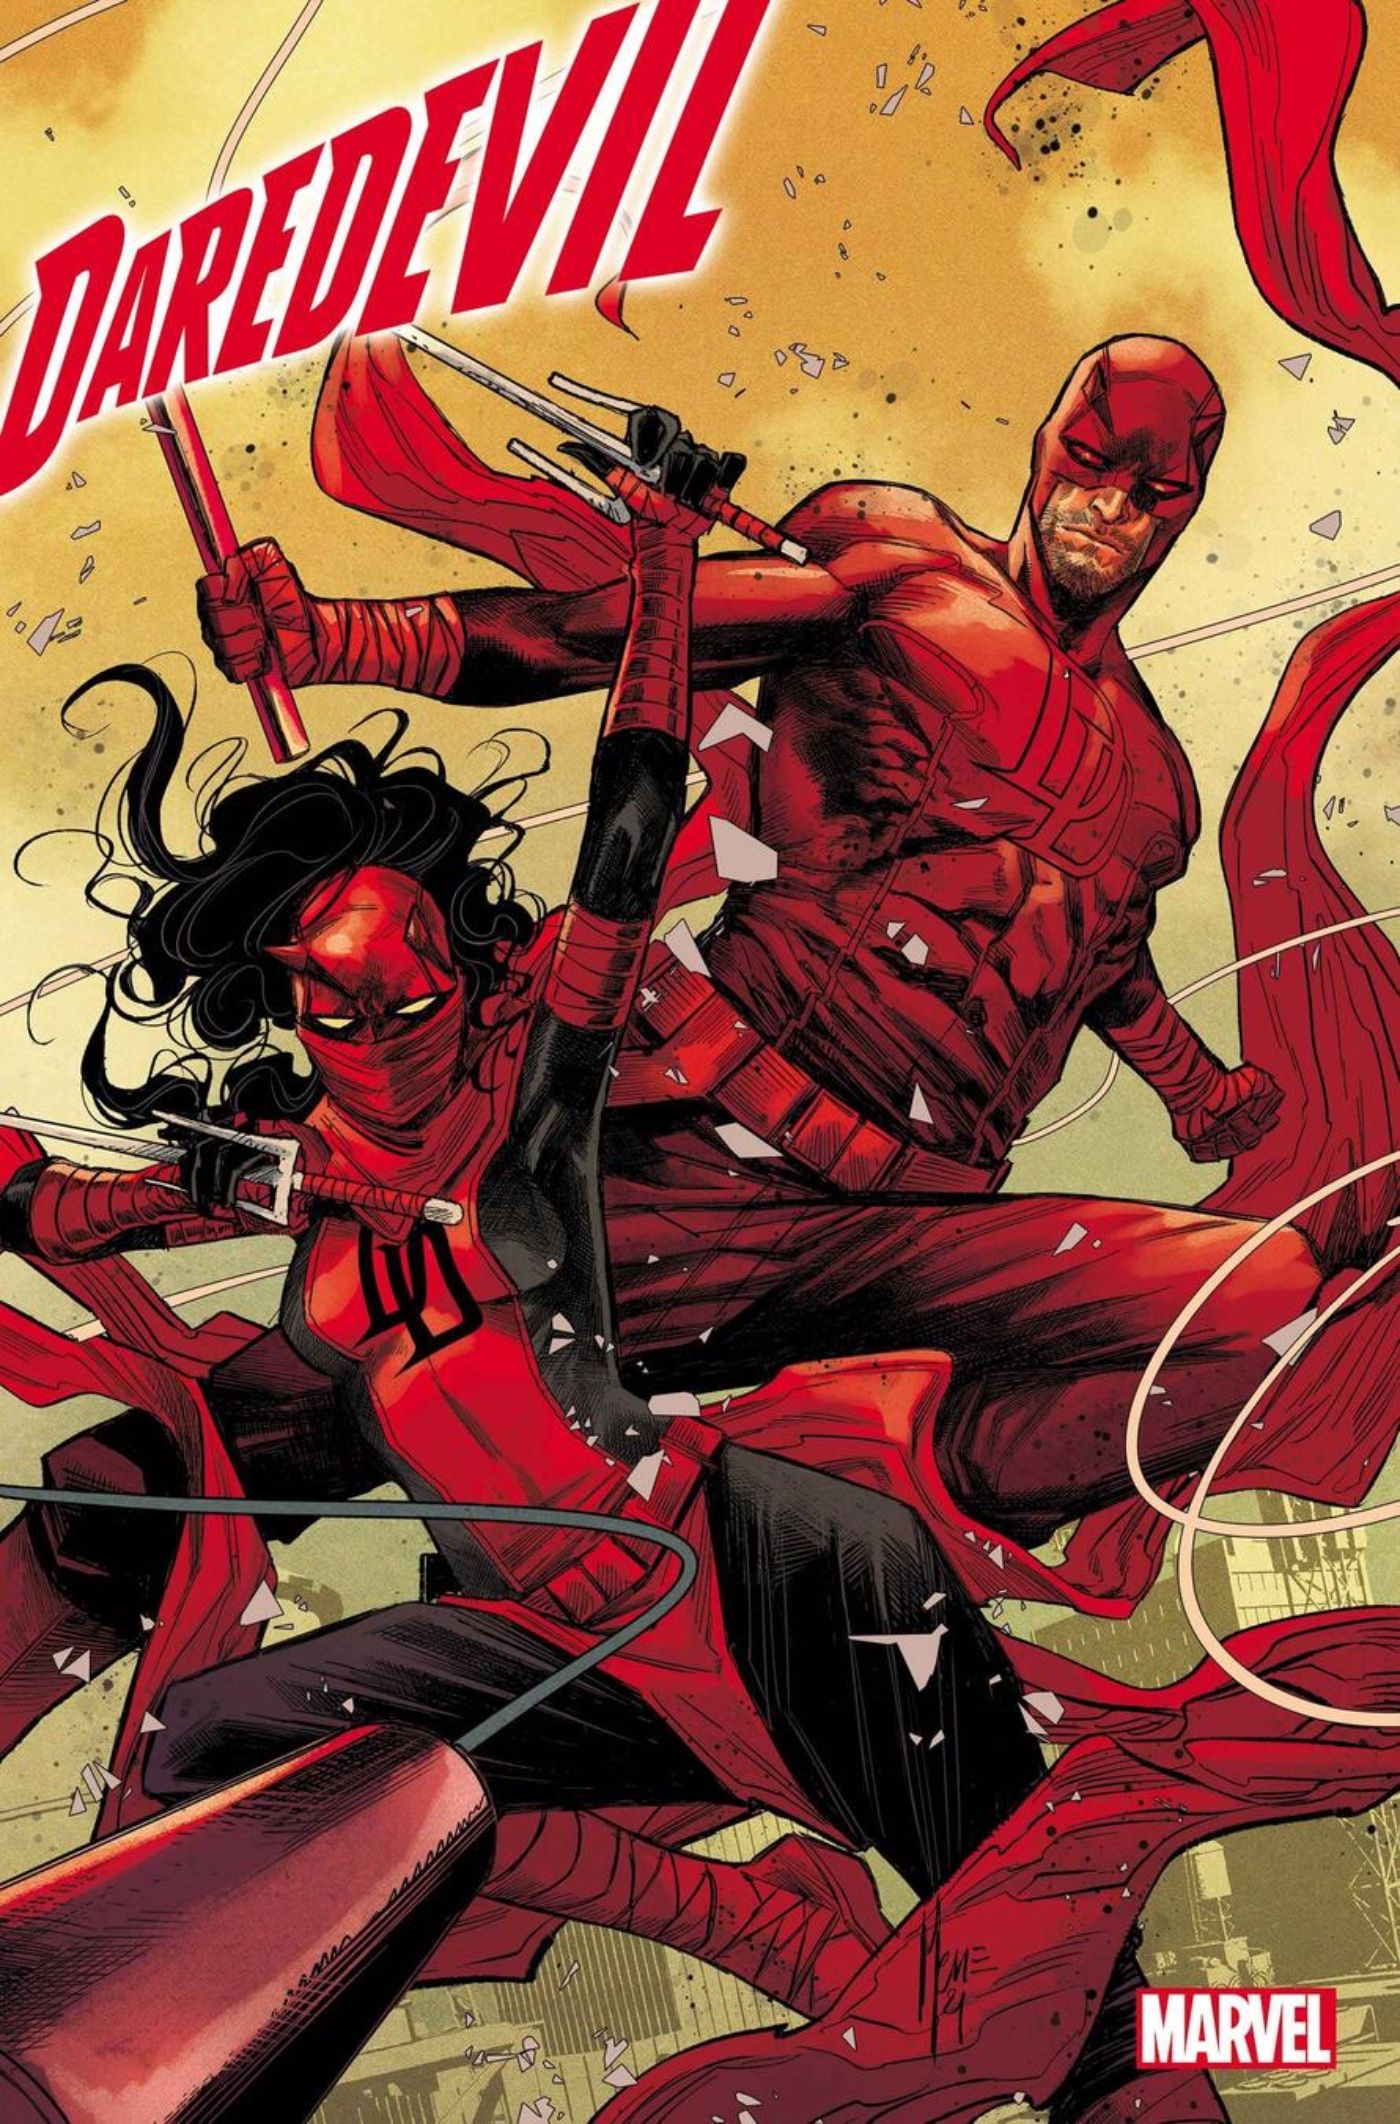 Daredevil 36 Cover featuring Daredevil and Elektra as Daredevil